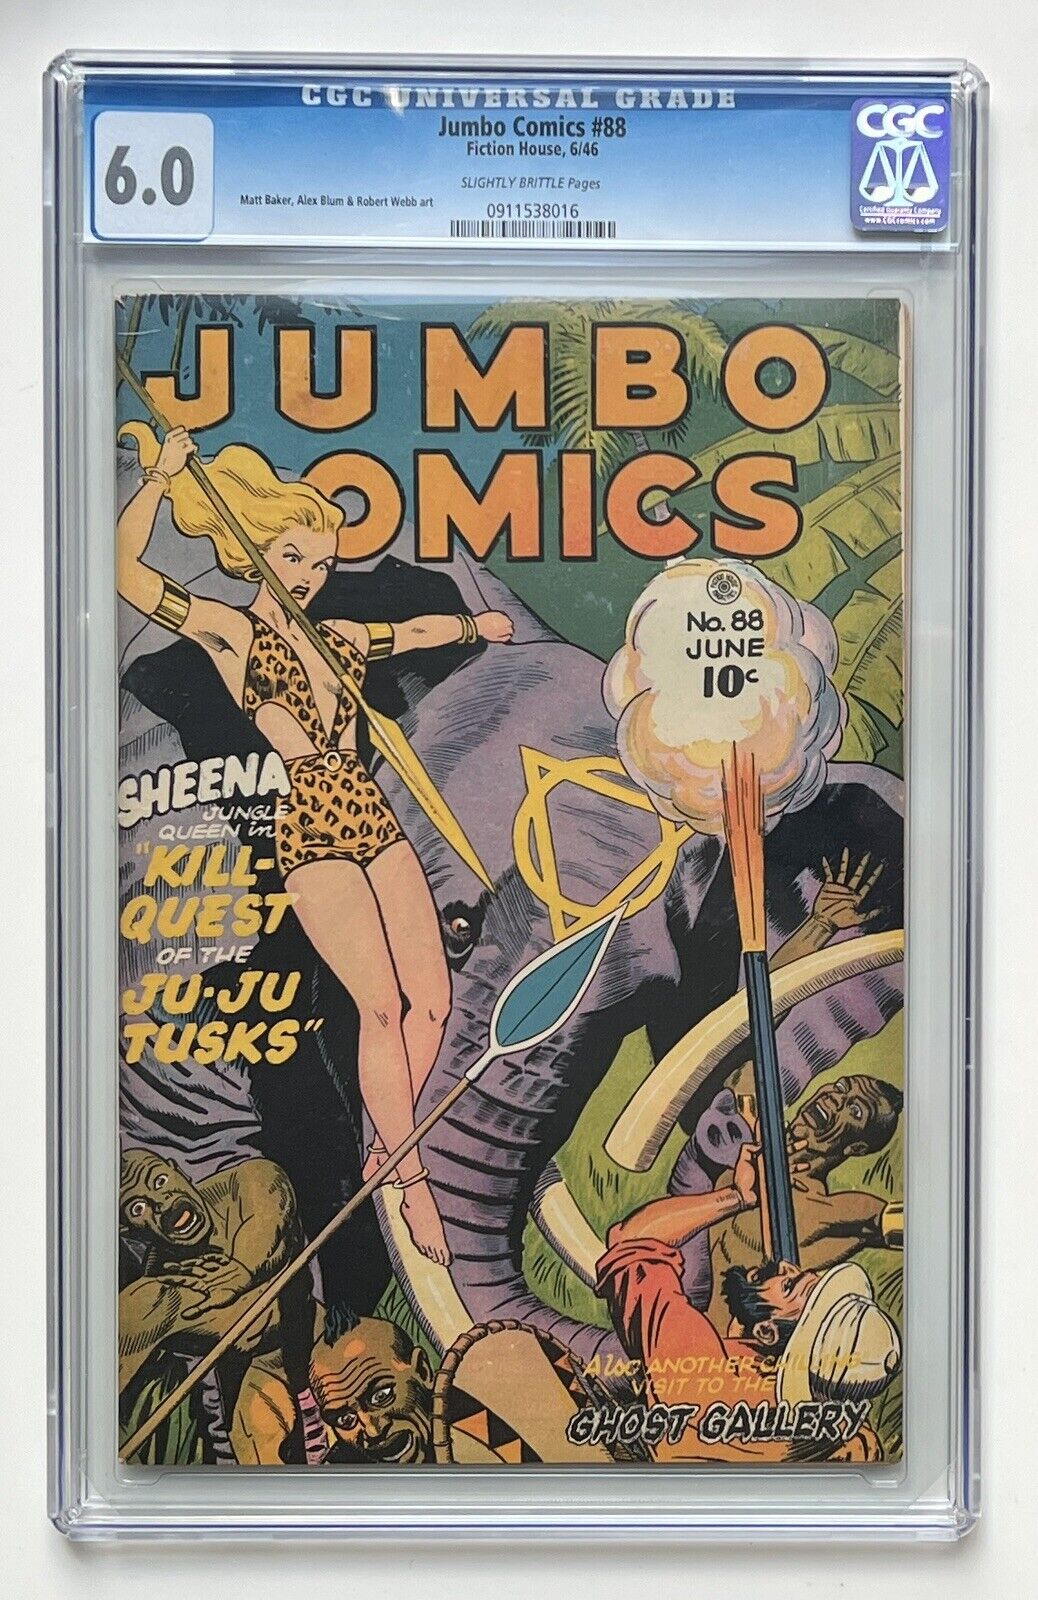 Jumbo Comics 88 CGC 6.0 Matt Baker art Sheena Jungle Queen 1946 Fiction House